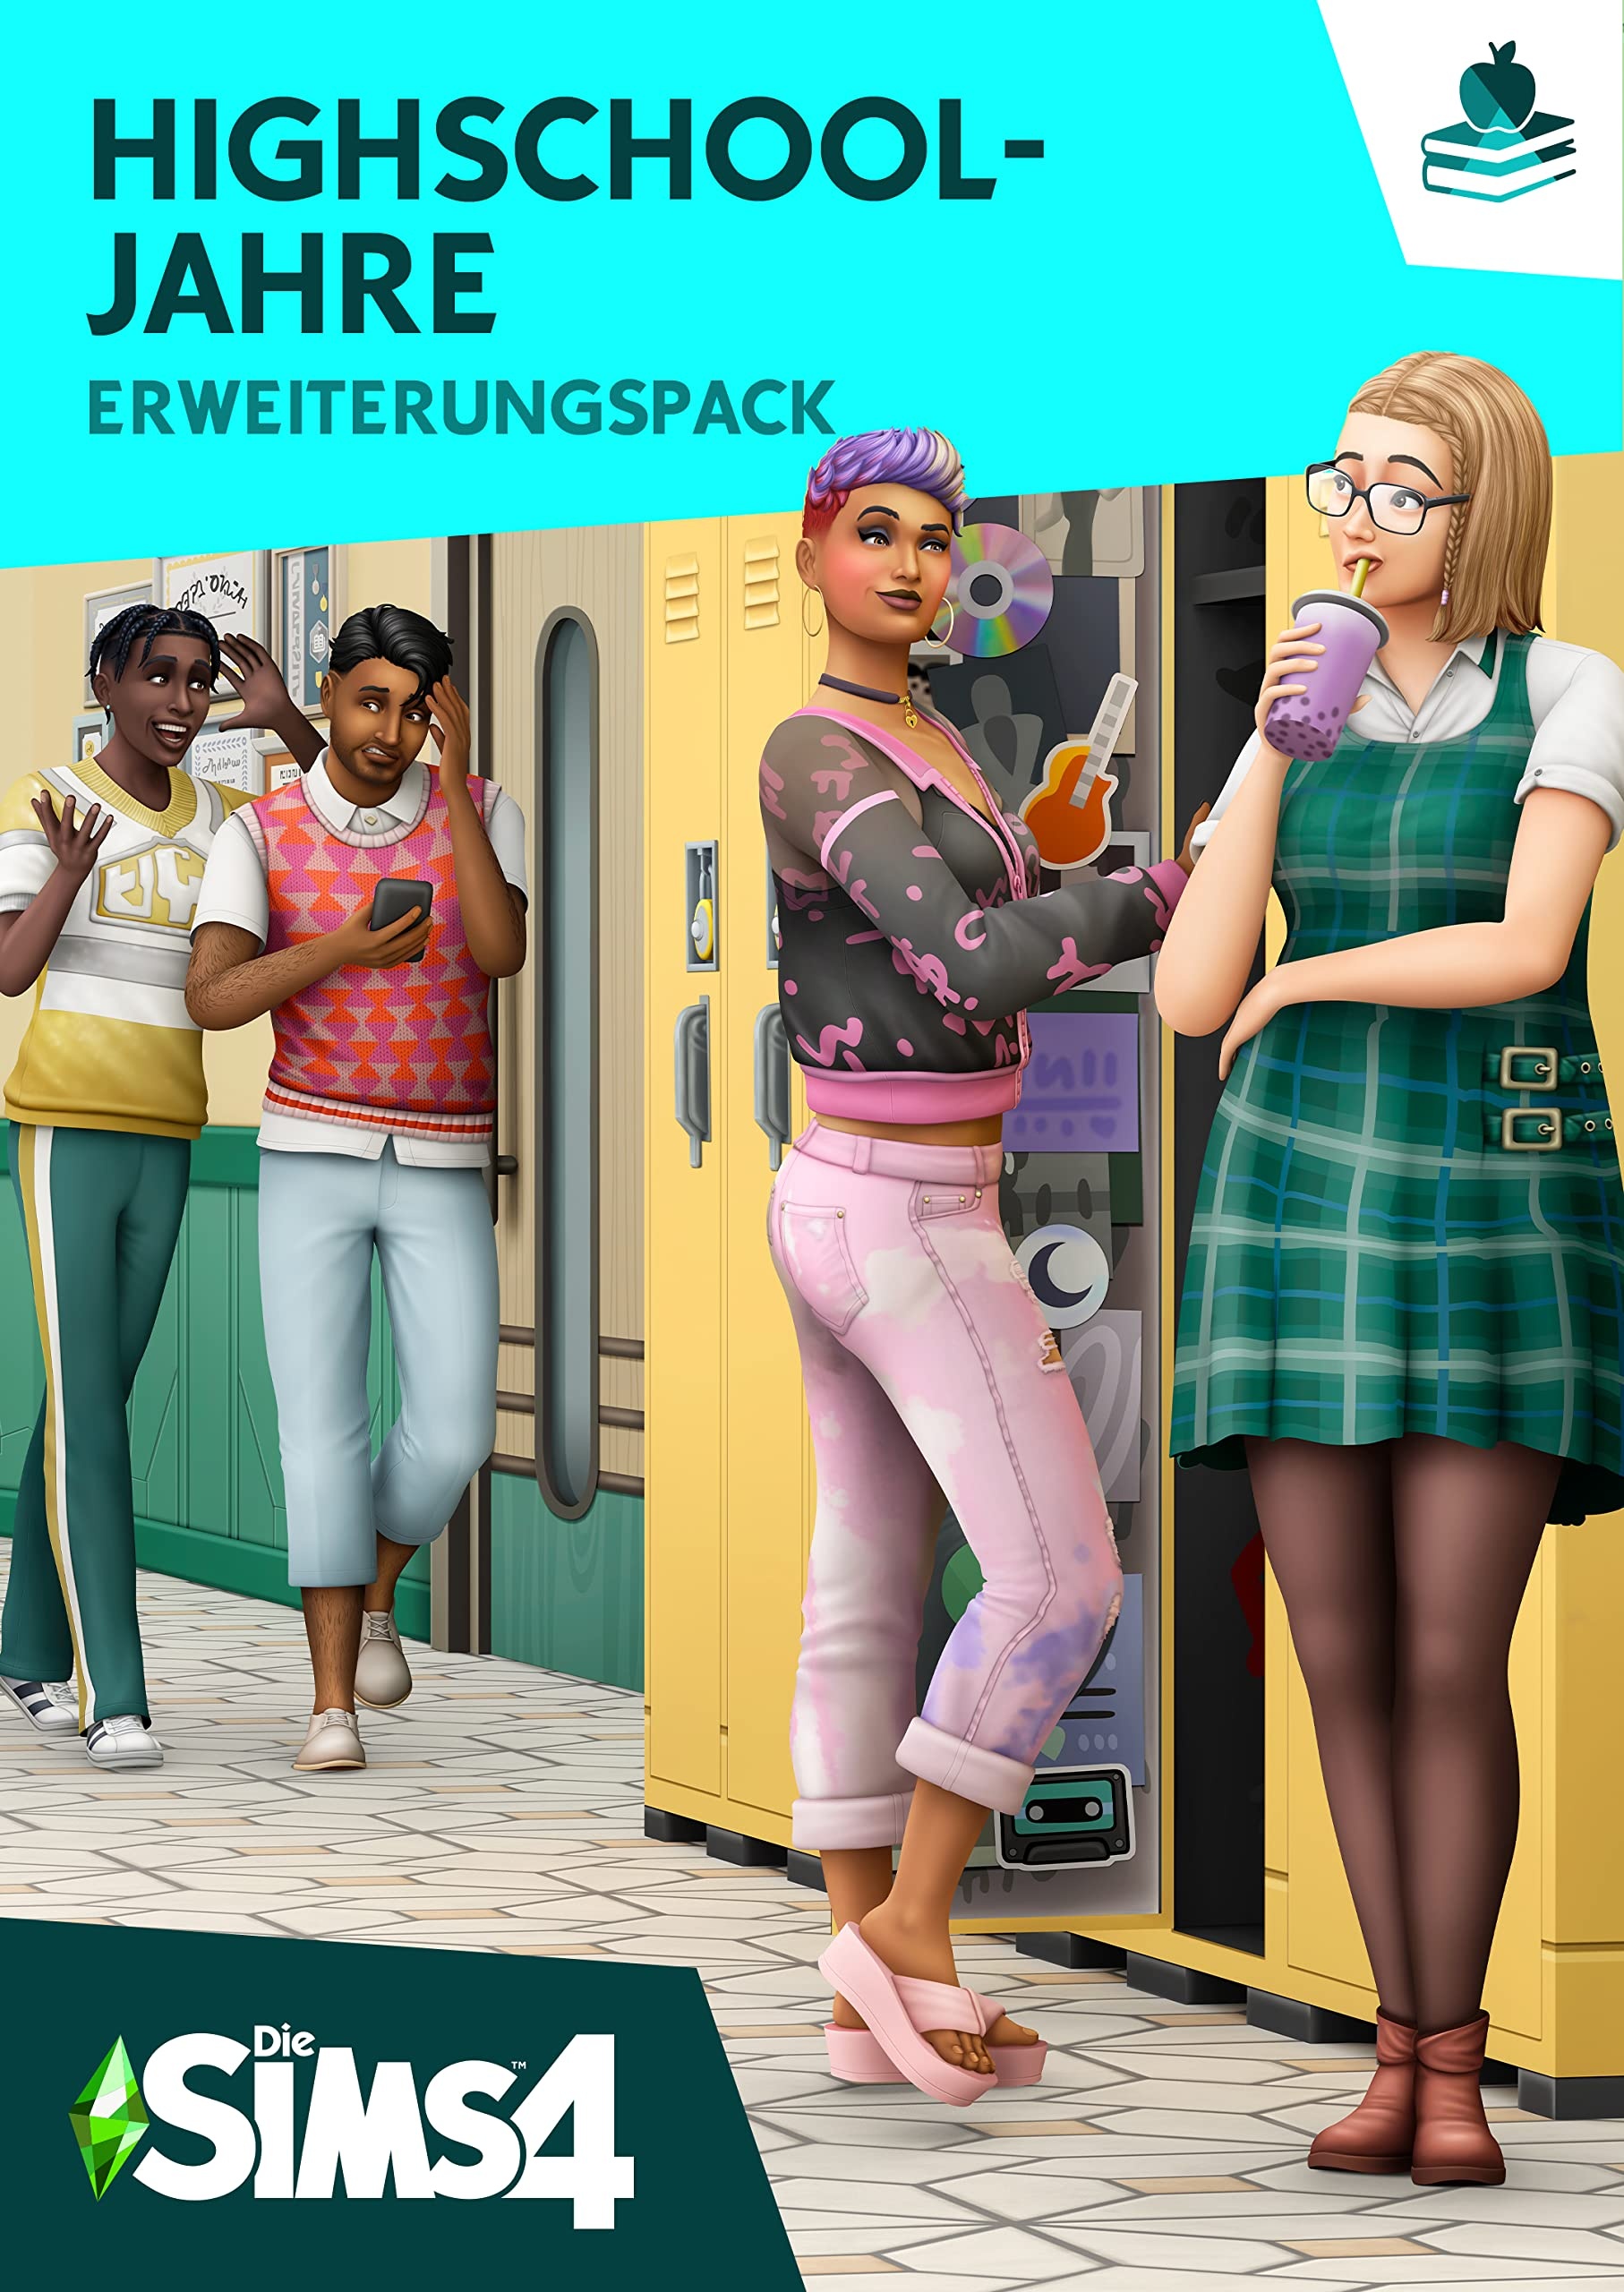 Die Sims 4 Highschool-Jare (EP12)| Erweiterungspack | PC/Mac | VideoGame | Code in der Box | Deutsch